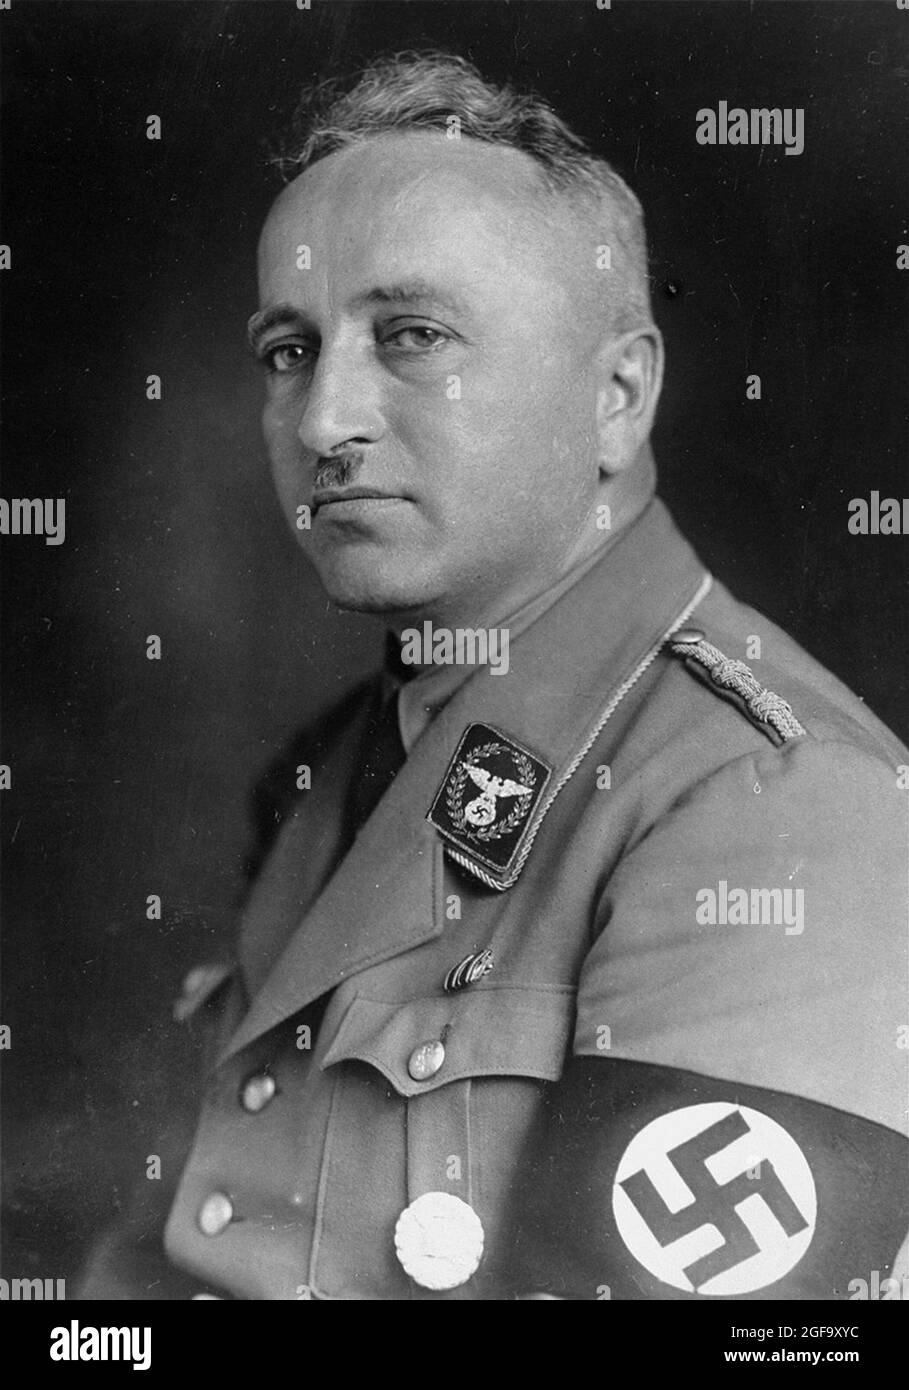 Un portrait du dirigeant nazi Robert Ley. Il a été chef du Front travailliste allemand de 1933 à 1945. Il a été capturé en 1945 et s'est suicidé en prison. Banque D'Images